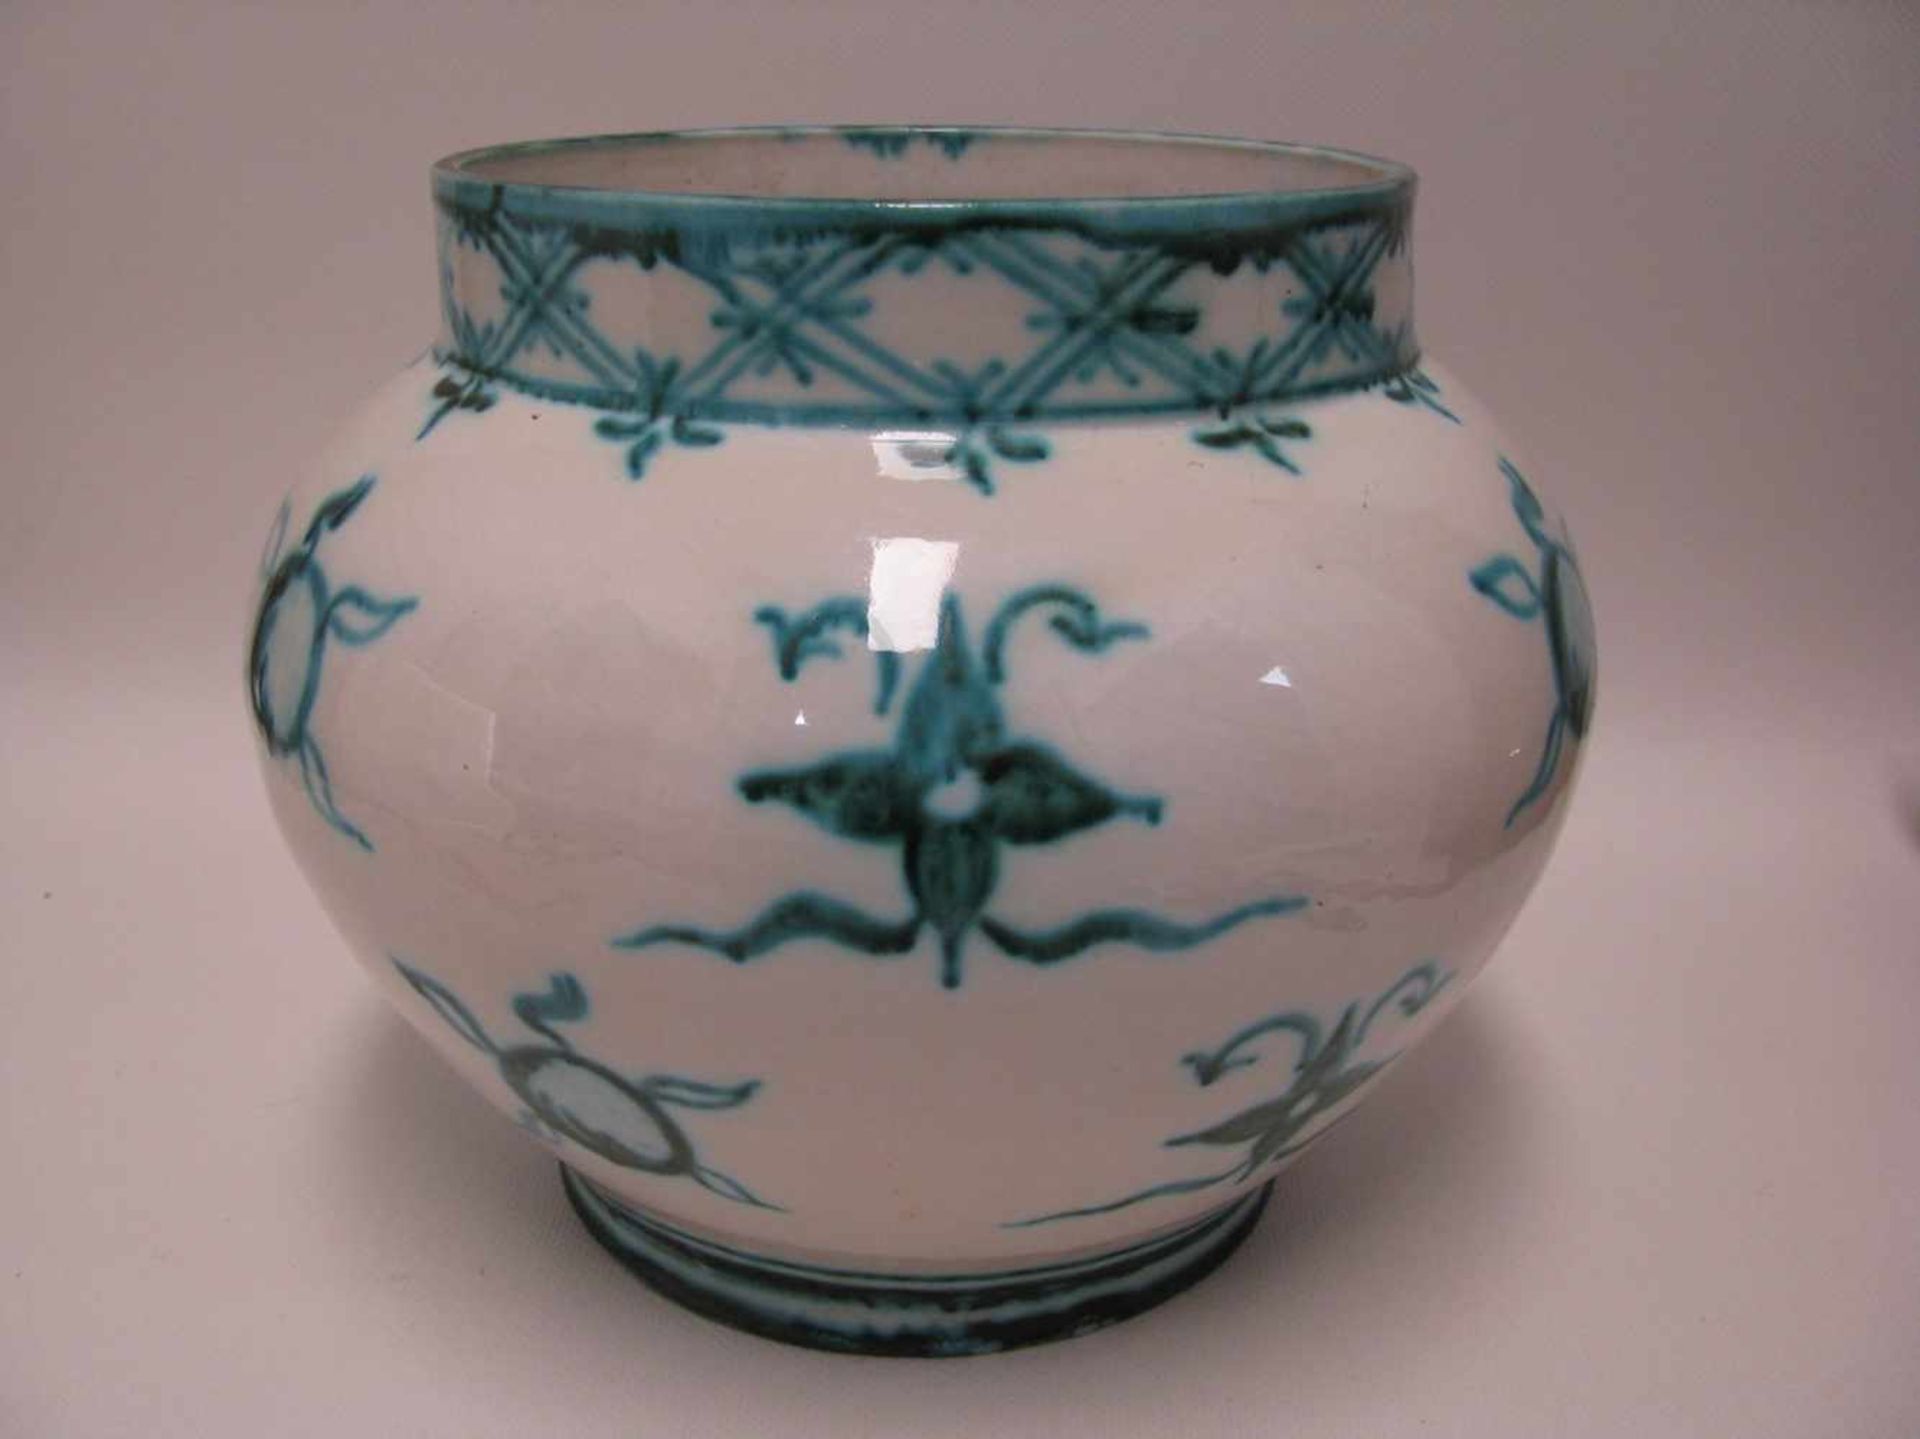 Vase, um 1900, Ton mit grünlich-weißer Glasur, unles.gem., h 20 cm, d 25 cm.